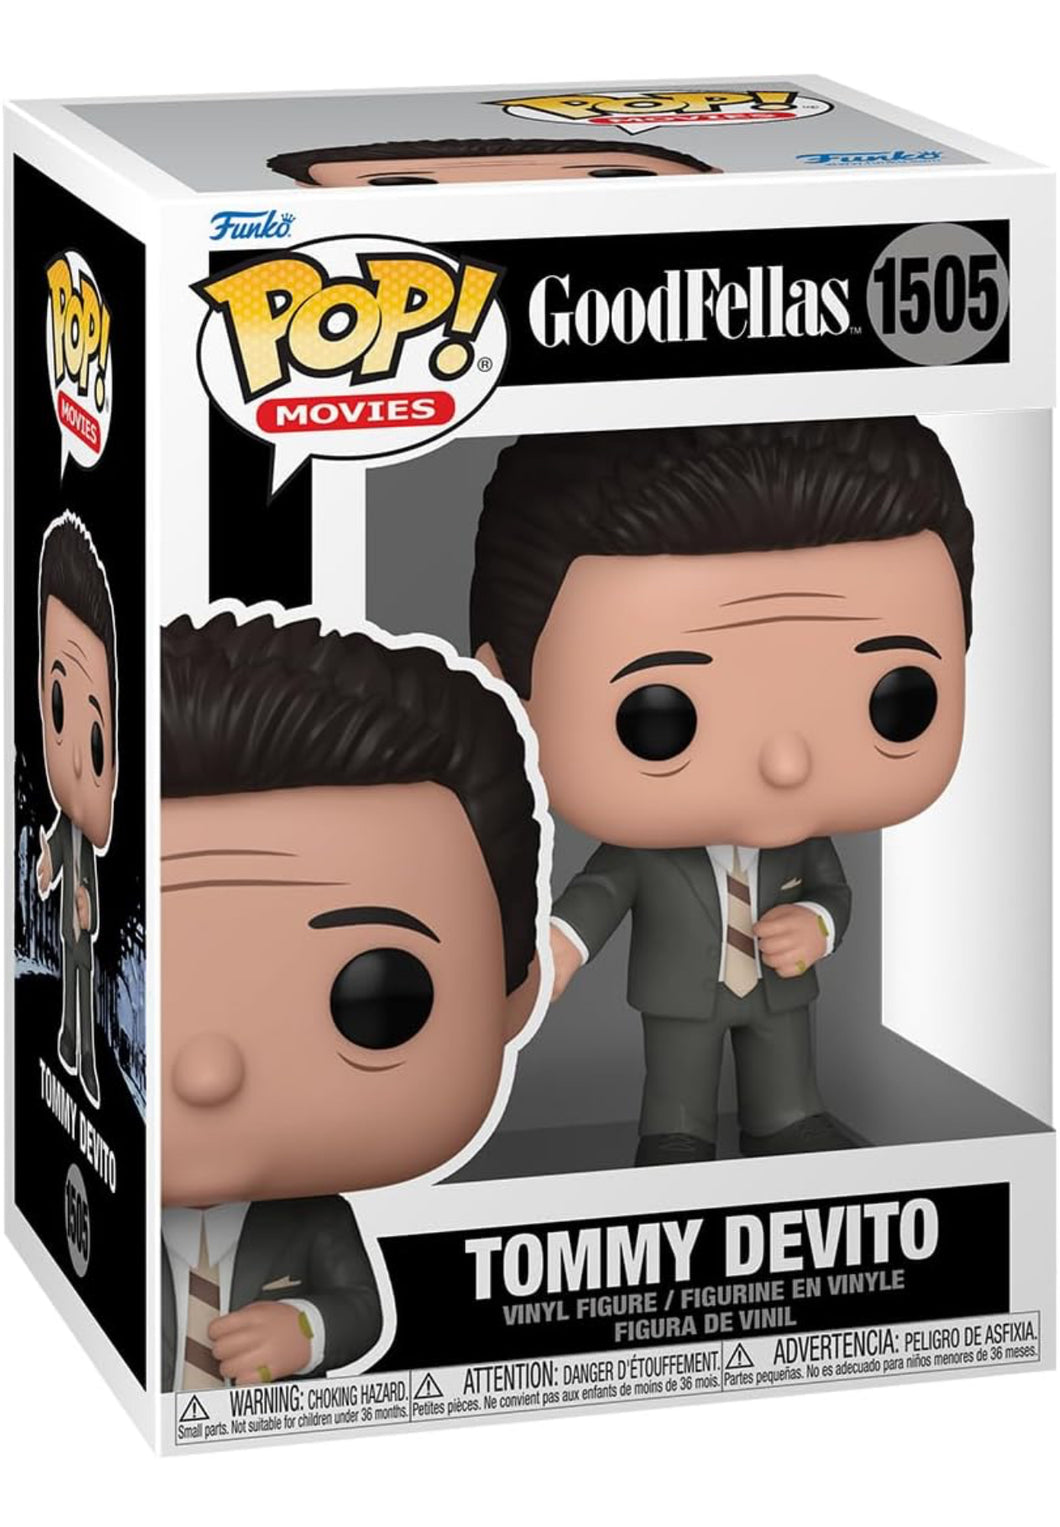 Funko Pop! Movies: Goodfellas - Tommy Devito